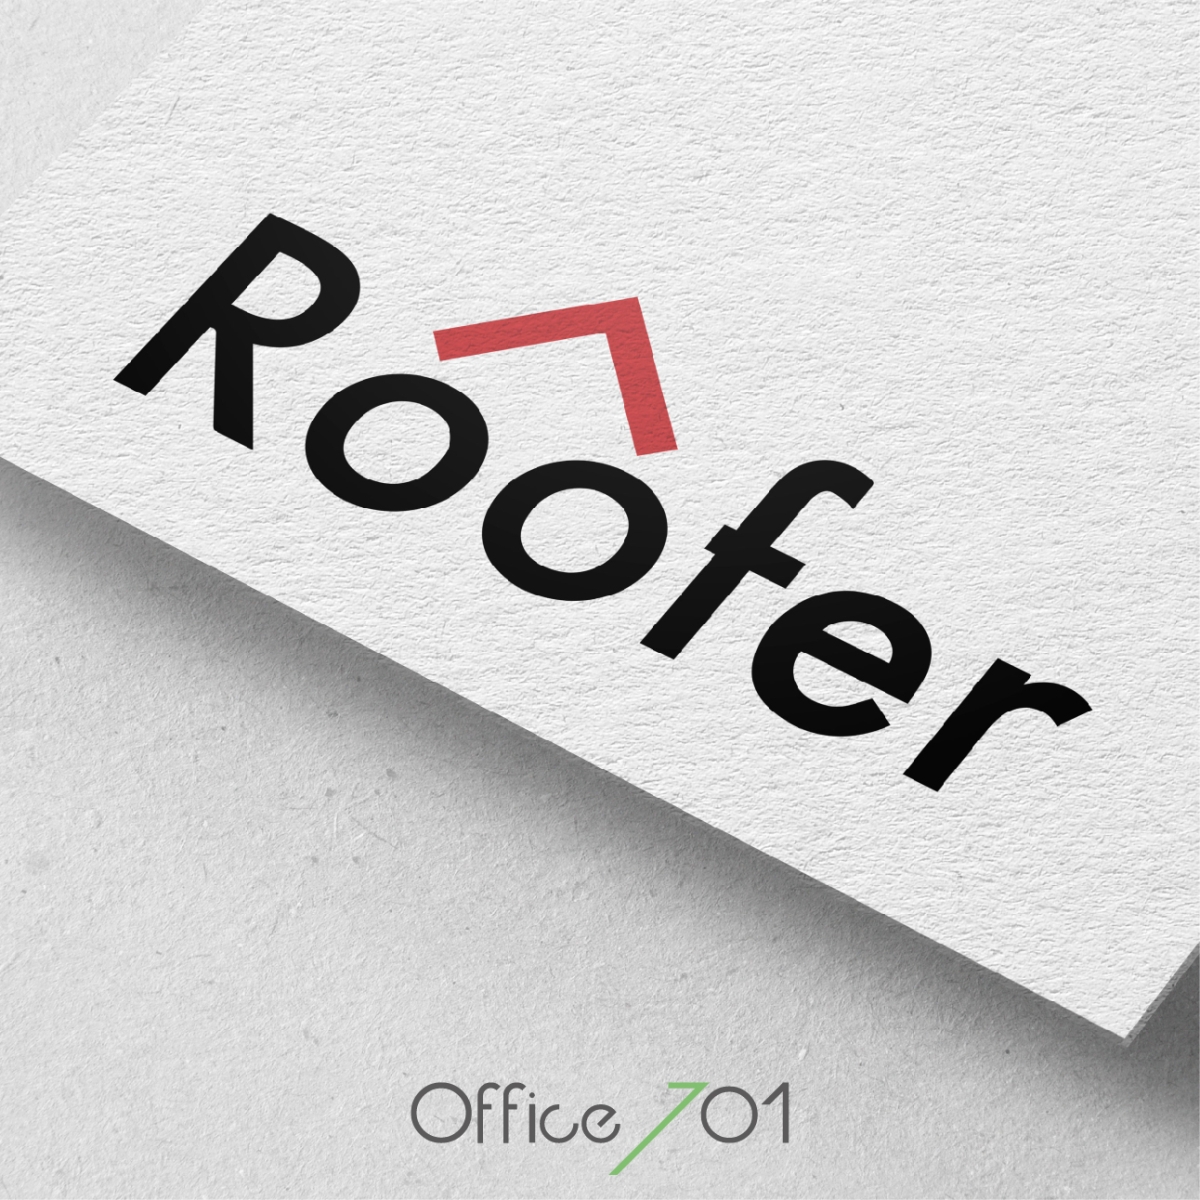 Office701 | Roofer | Logo Design